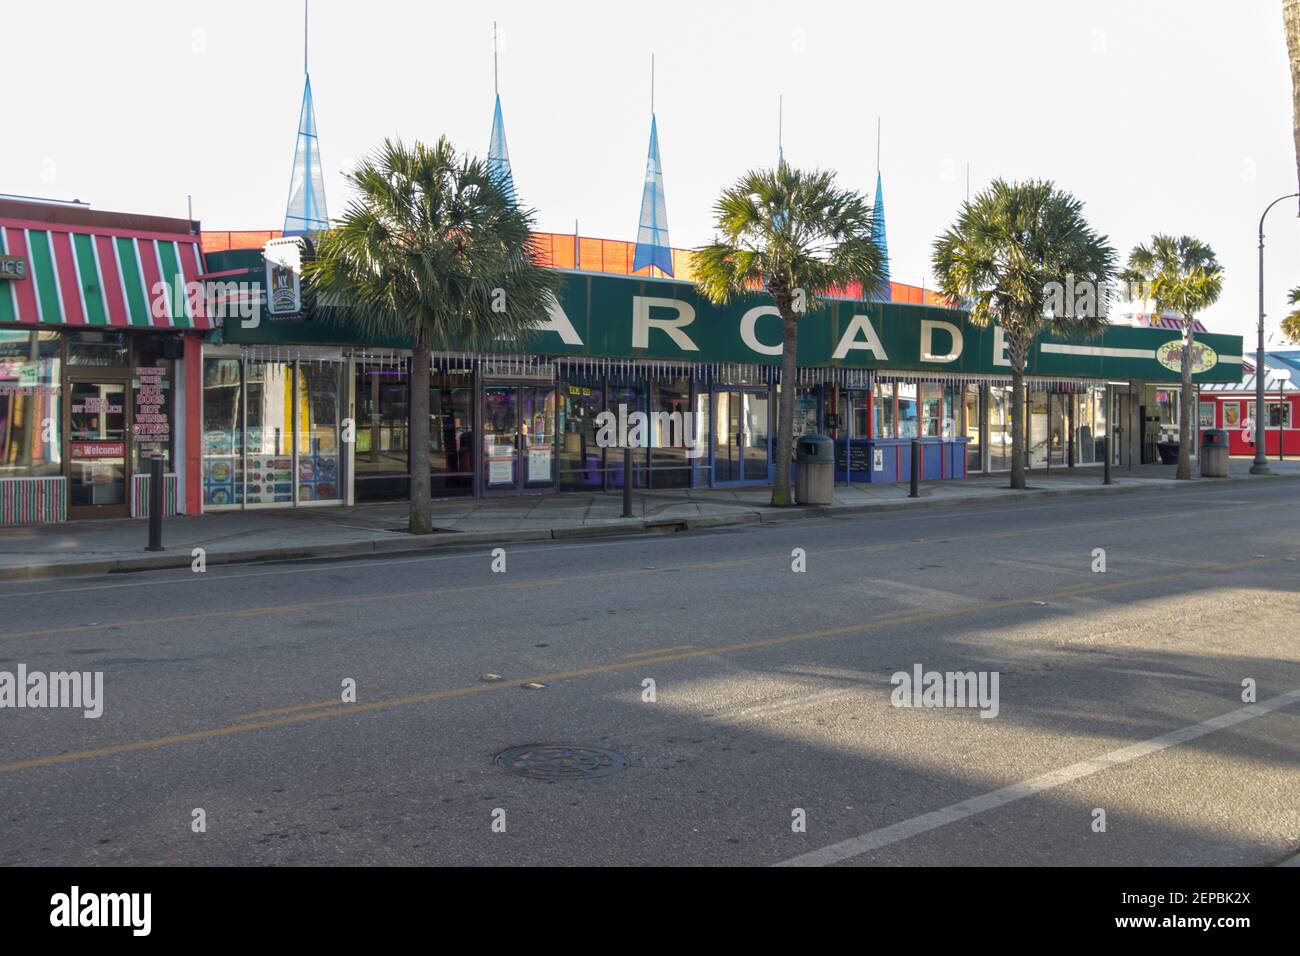 Myrtle Beach, Caroline du Sud, États-Unis - 25 février 2021 : entrée de la salle de jeux d'arcade vintage située dans le quartier du centre-ville de Myrtle Beach, Caroline du Sud. Banque D'Images